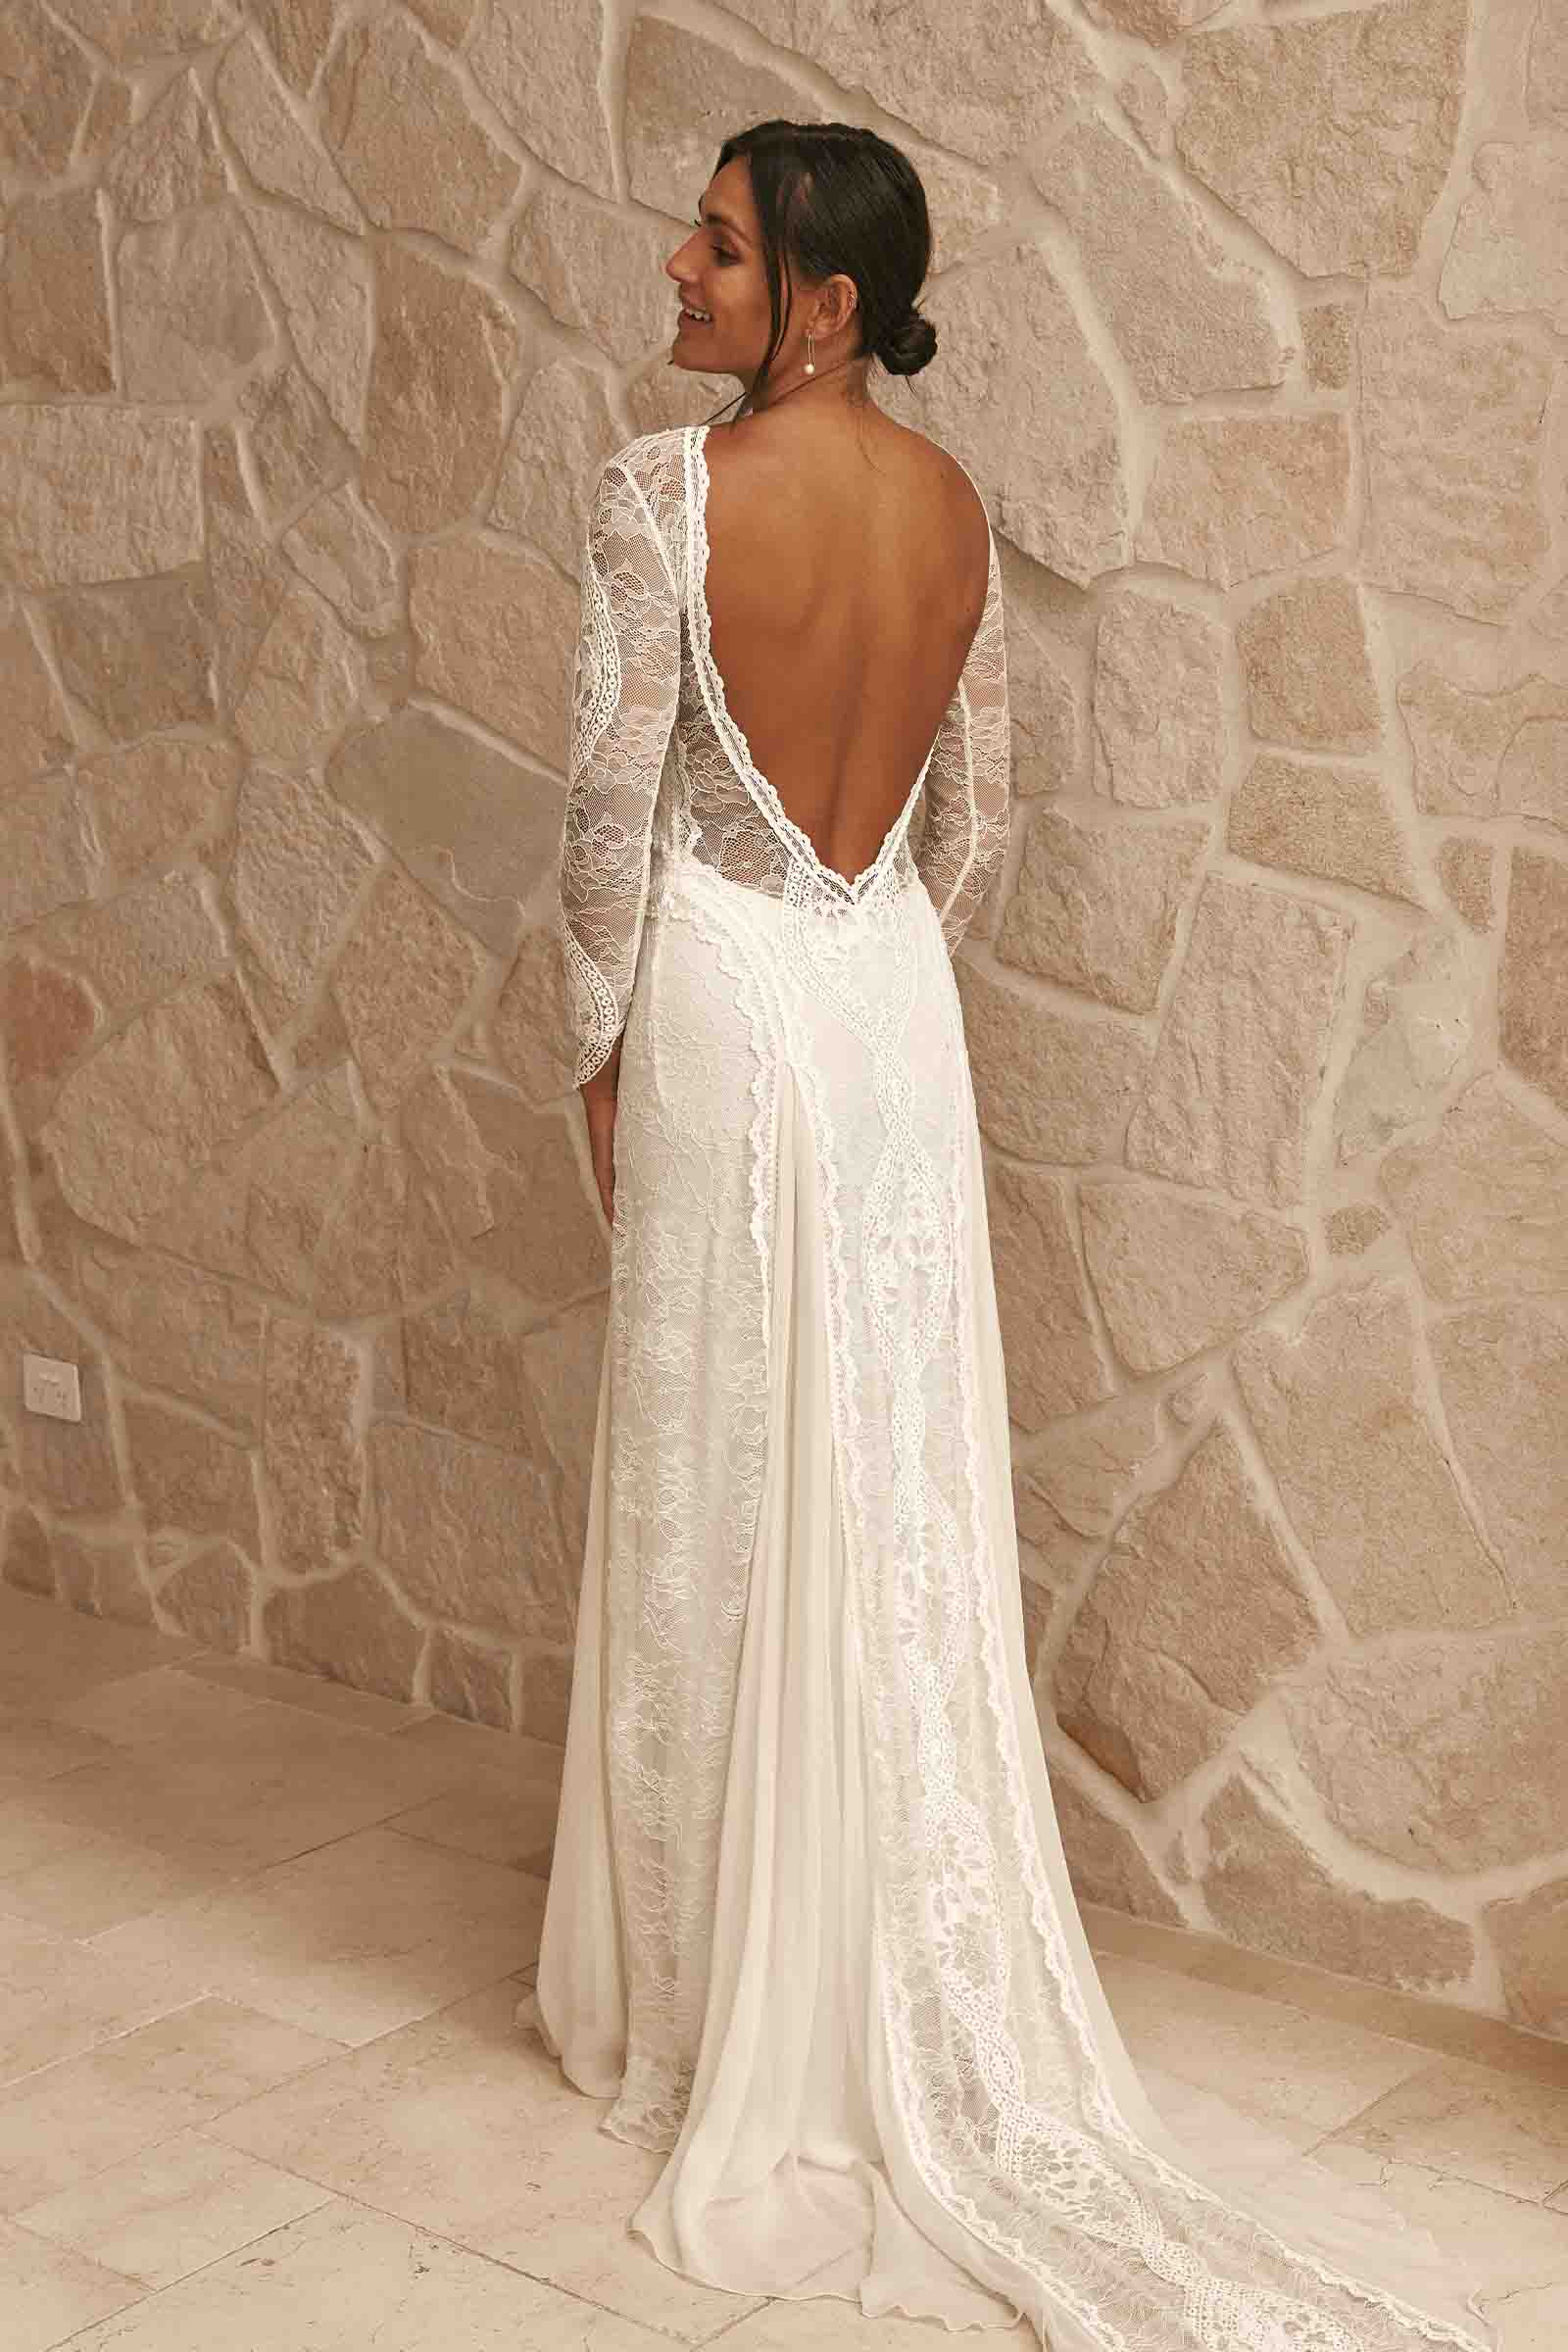 Customized Boat Neck White Ivory Lace Long Sleeves Wedding Dresses